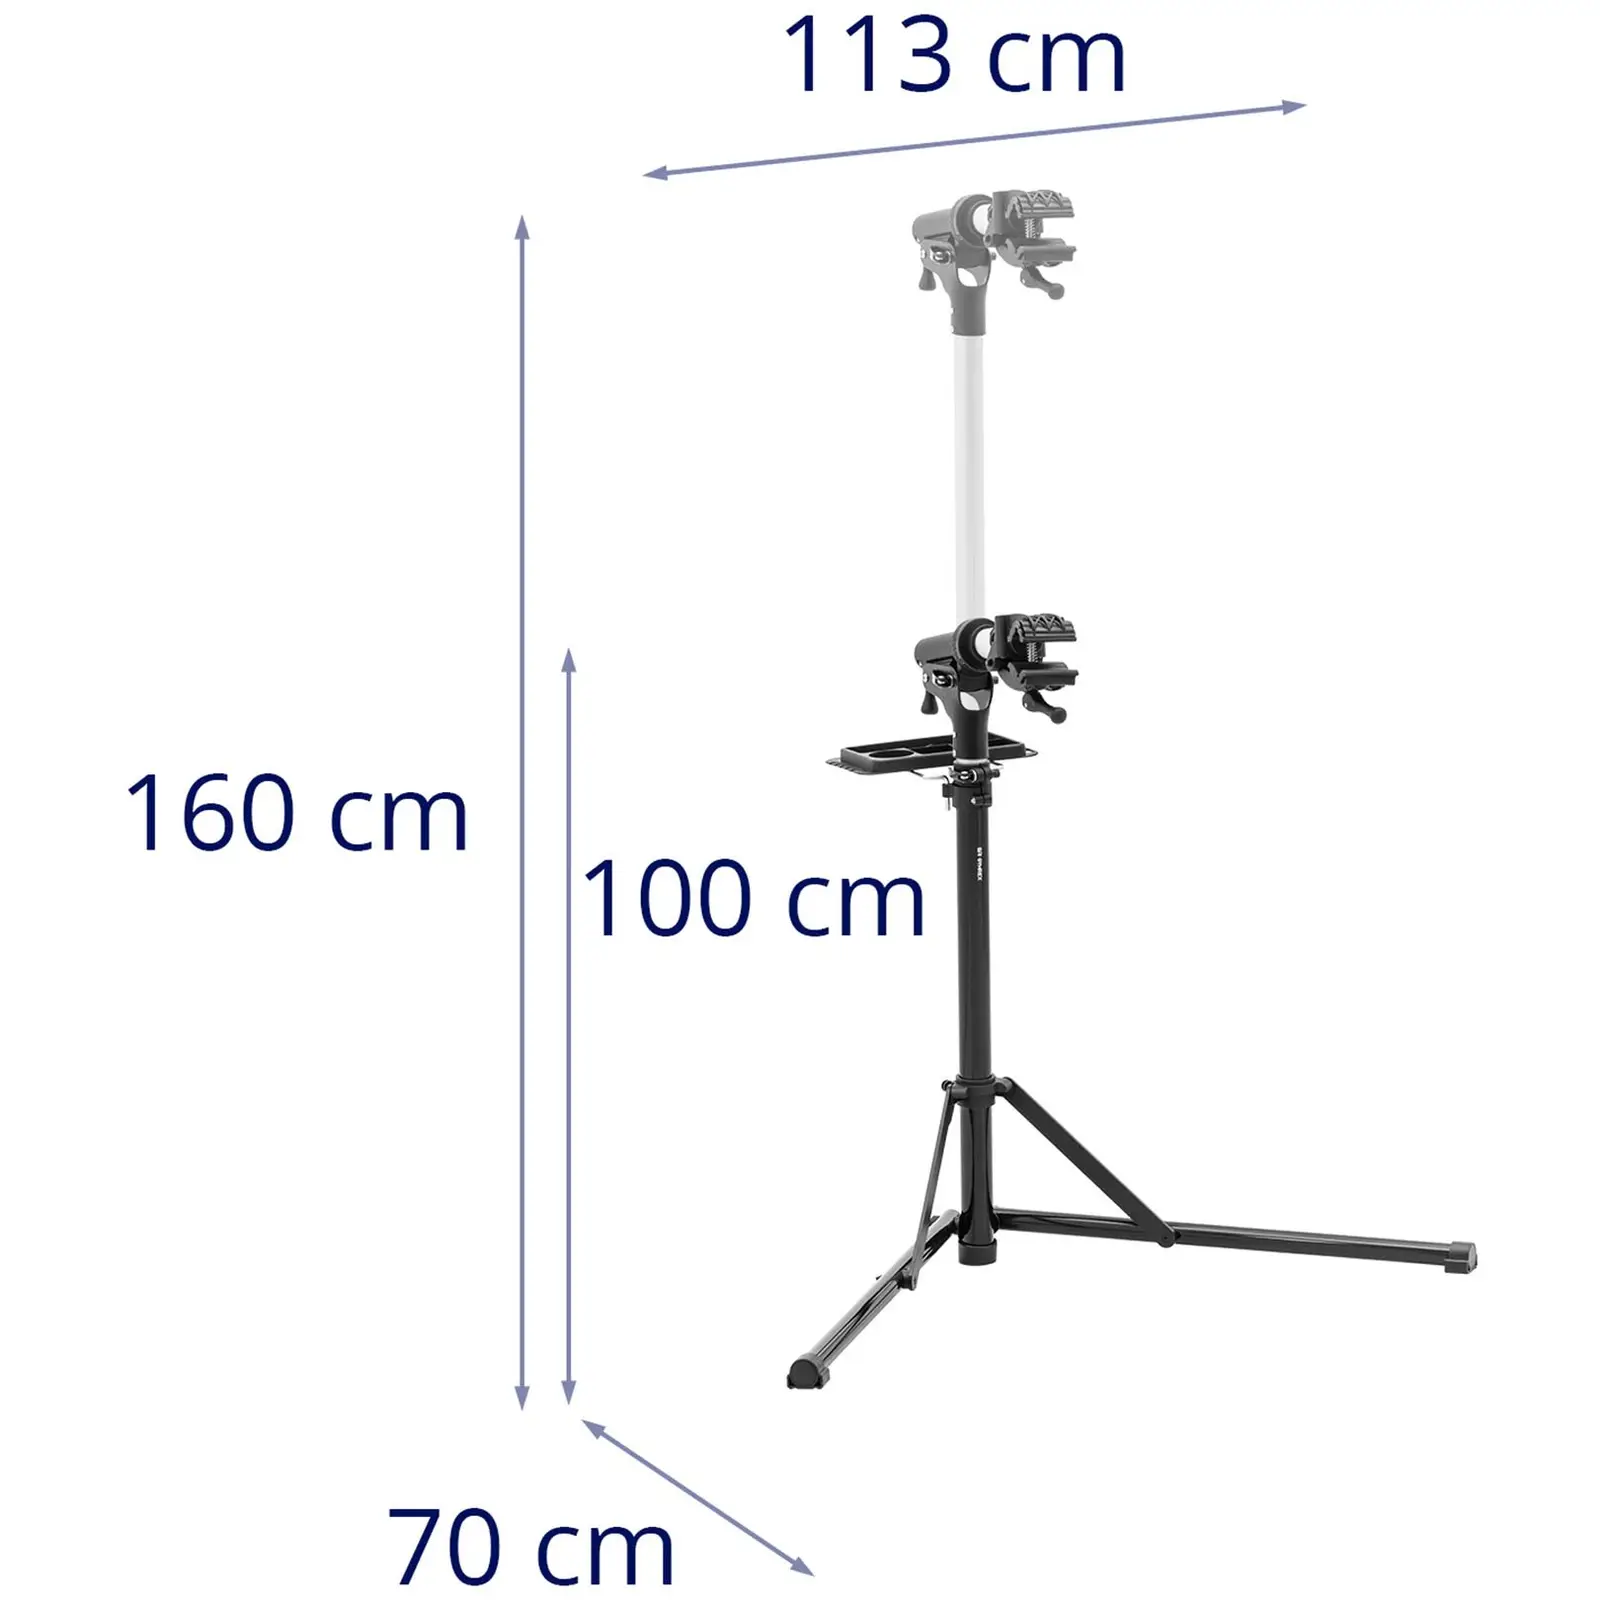 Stojak serwisowy do rowerów - 1000 - 1600 mm - składany - do 25 kg - 2 nogi